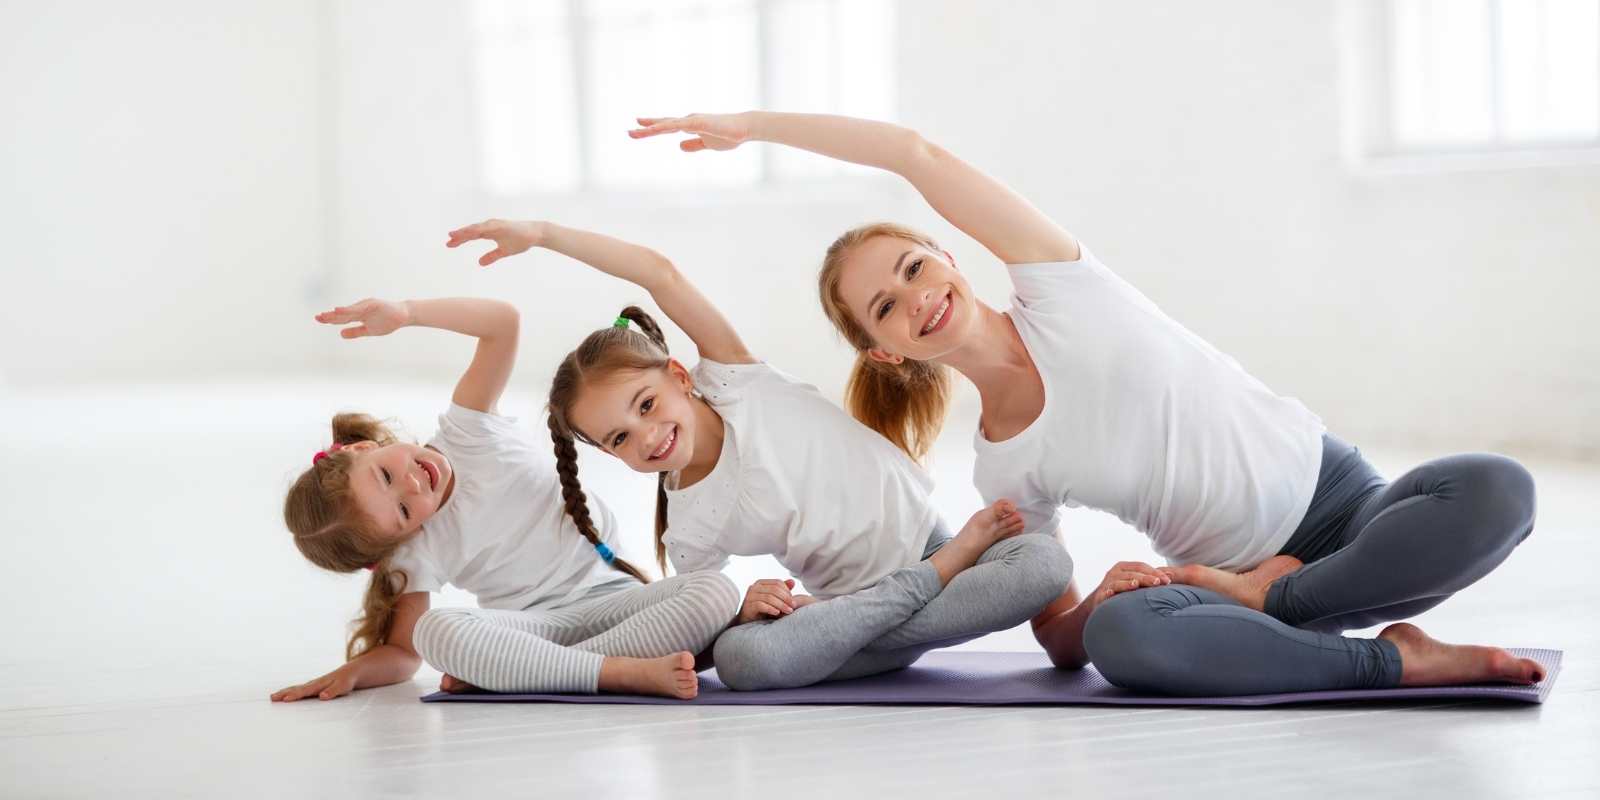 No momento você está vendo Praticar Yoga do Samara com seu filho (a),